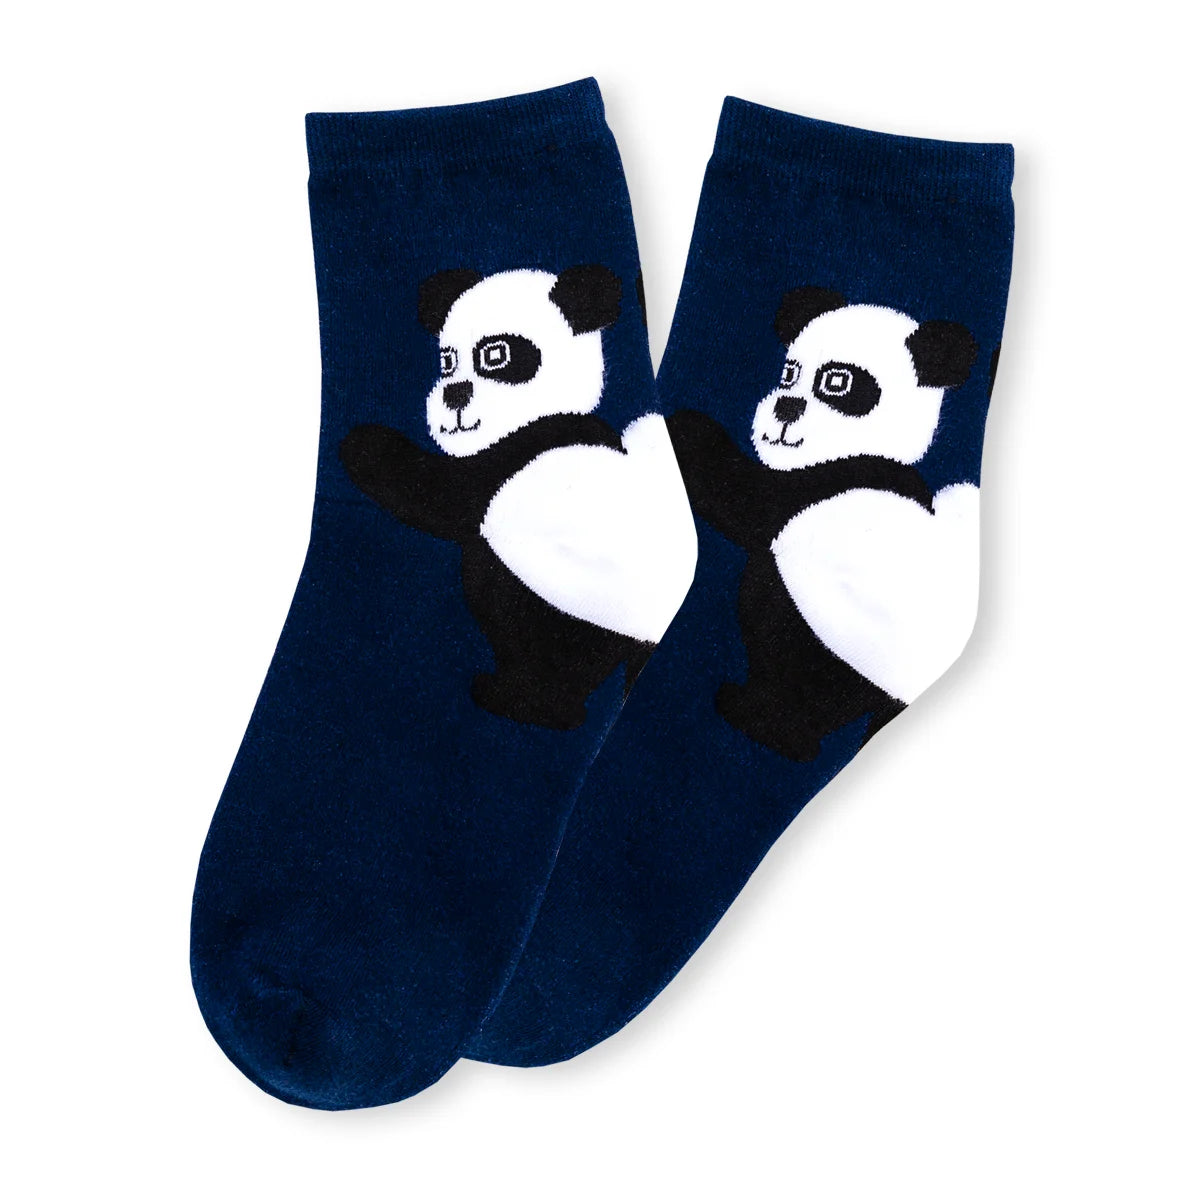 Chaussettes bleu adultes en coton représentant un panda sur le talon de la chaussette | Chaussettes douces et respirantes | Un excellent choix pour les adultes qui aiment les animaux